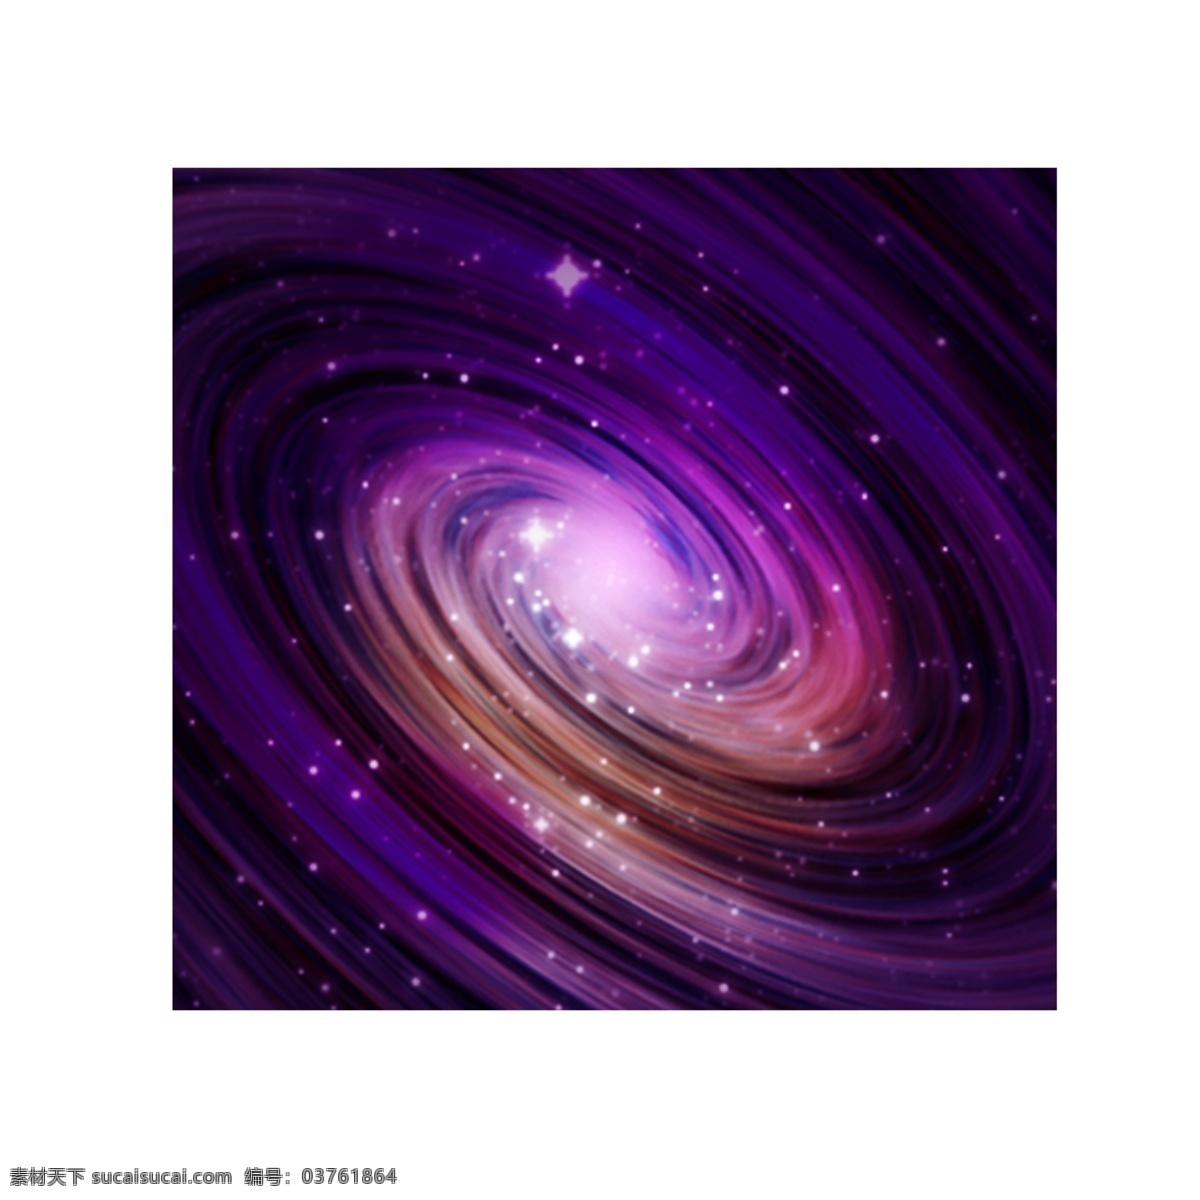 唯美 浪漫 星云 世界 星空 炫彩 紫色 星星 宇宙 银河